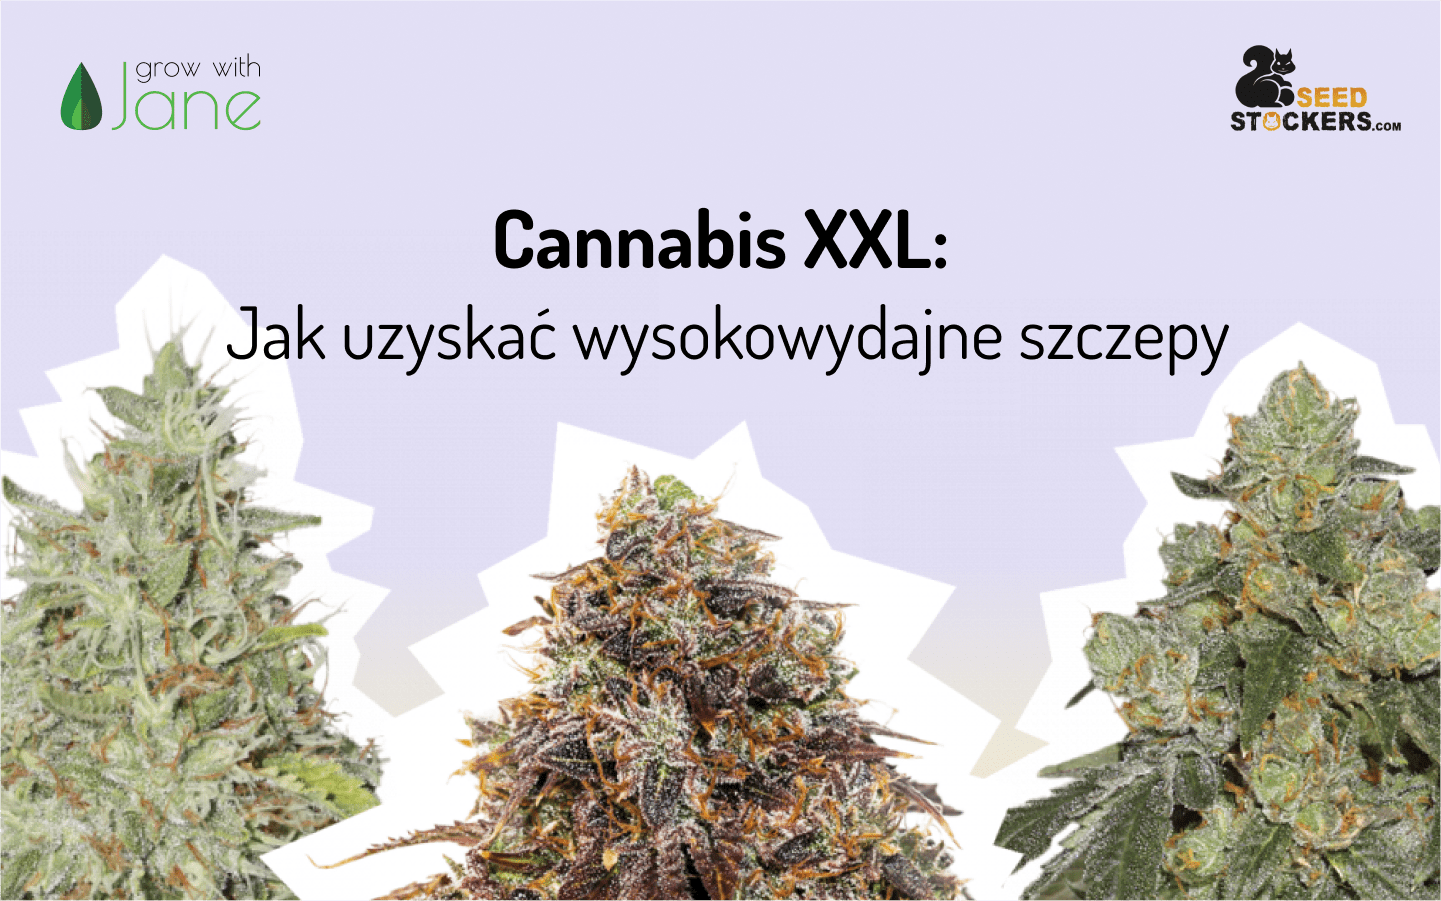 Cannabis XXL: Jak uzyskać wysokowydajne szczepy